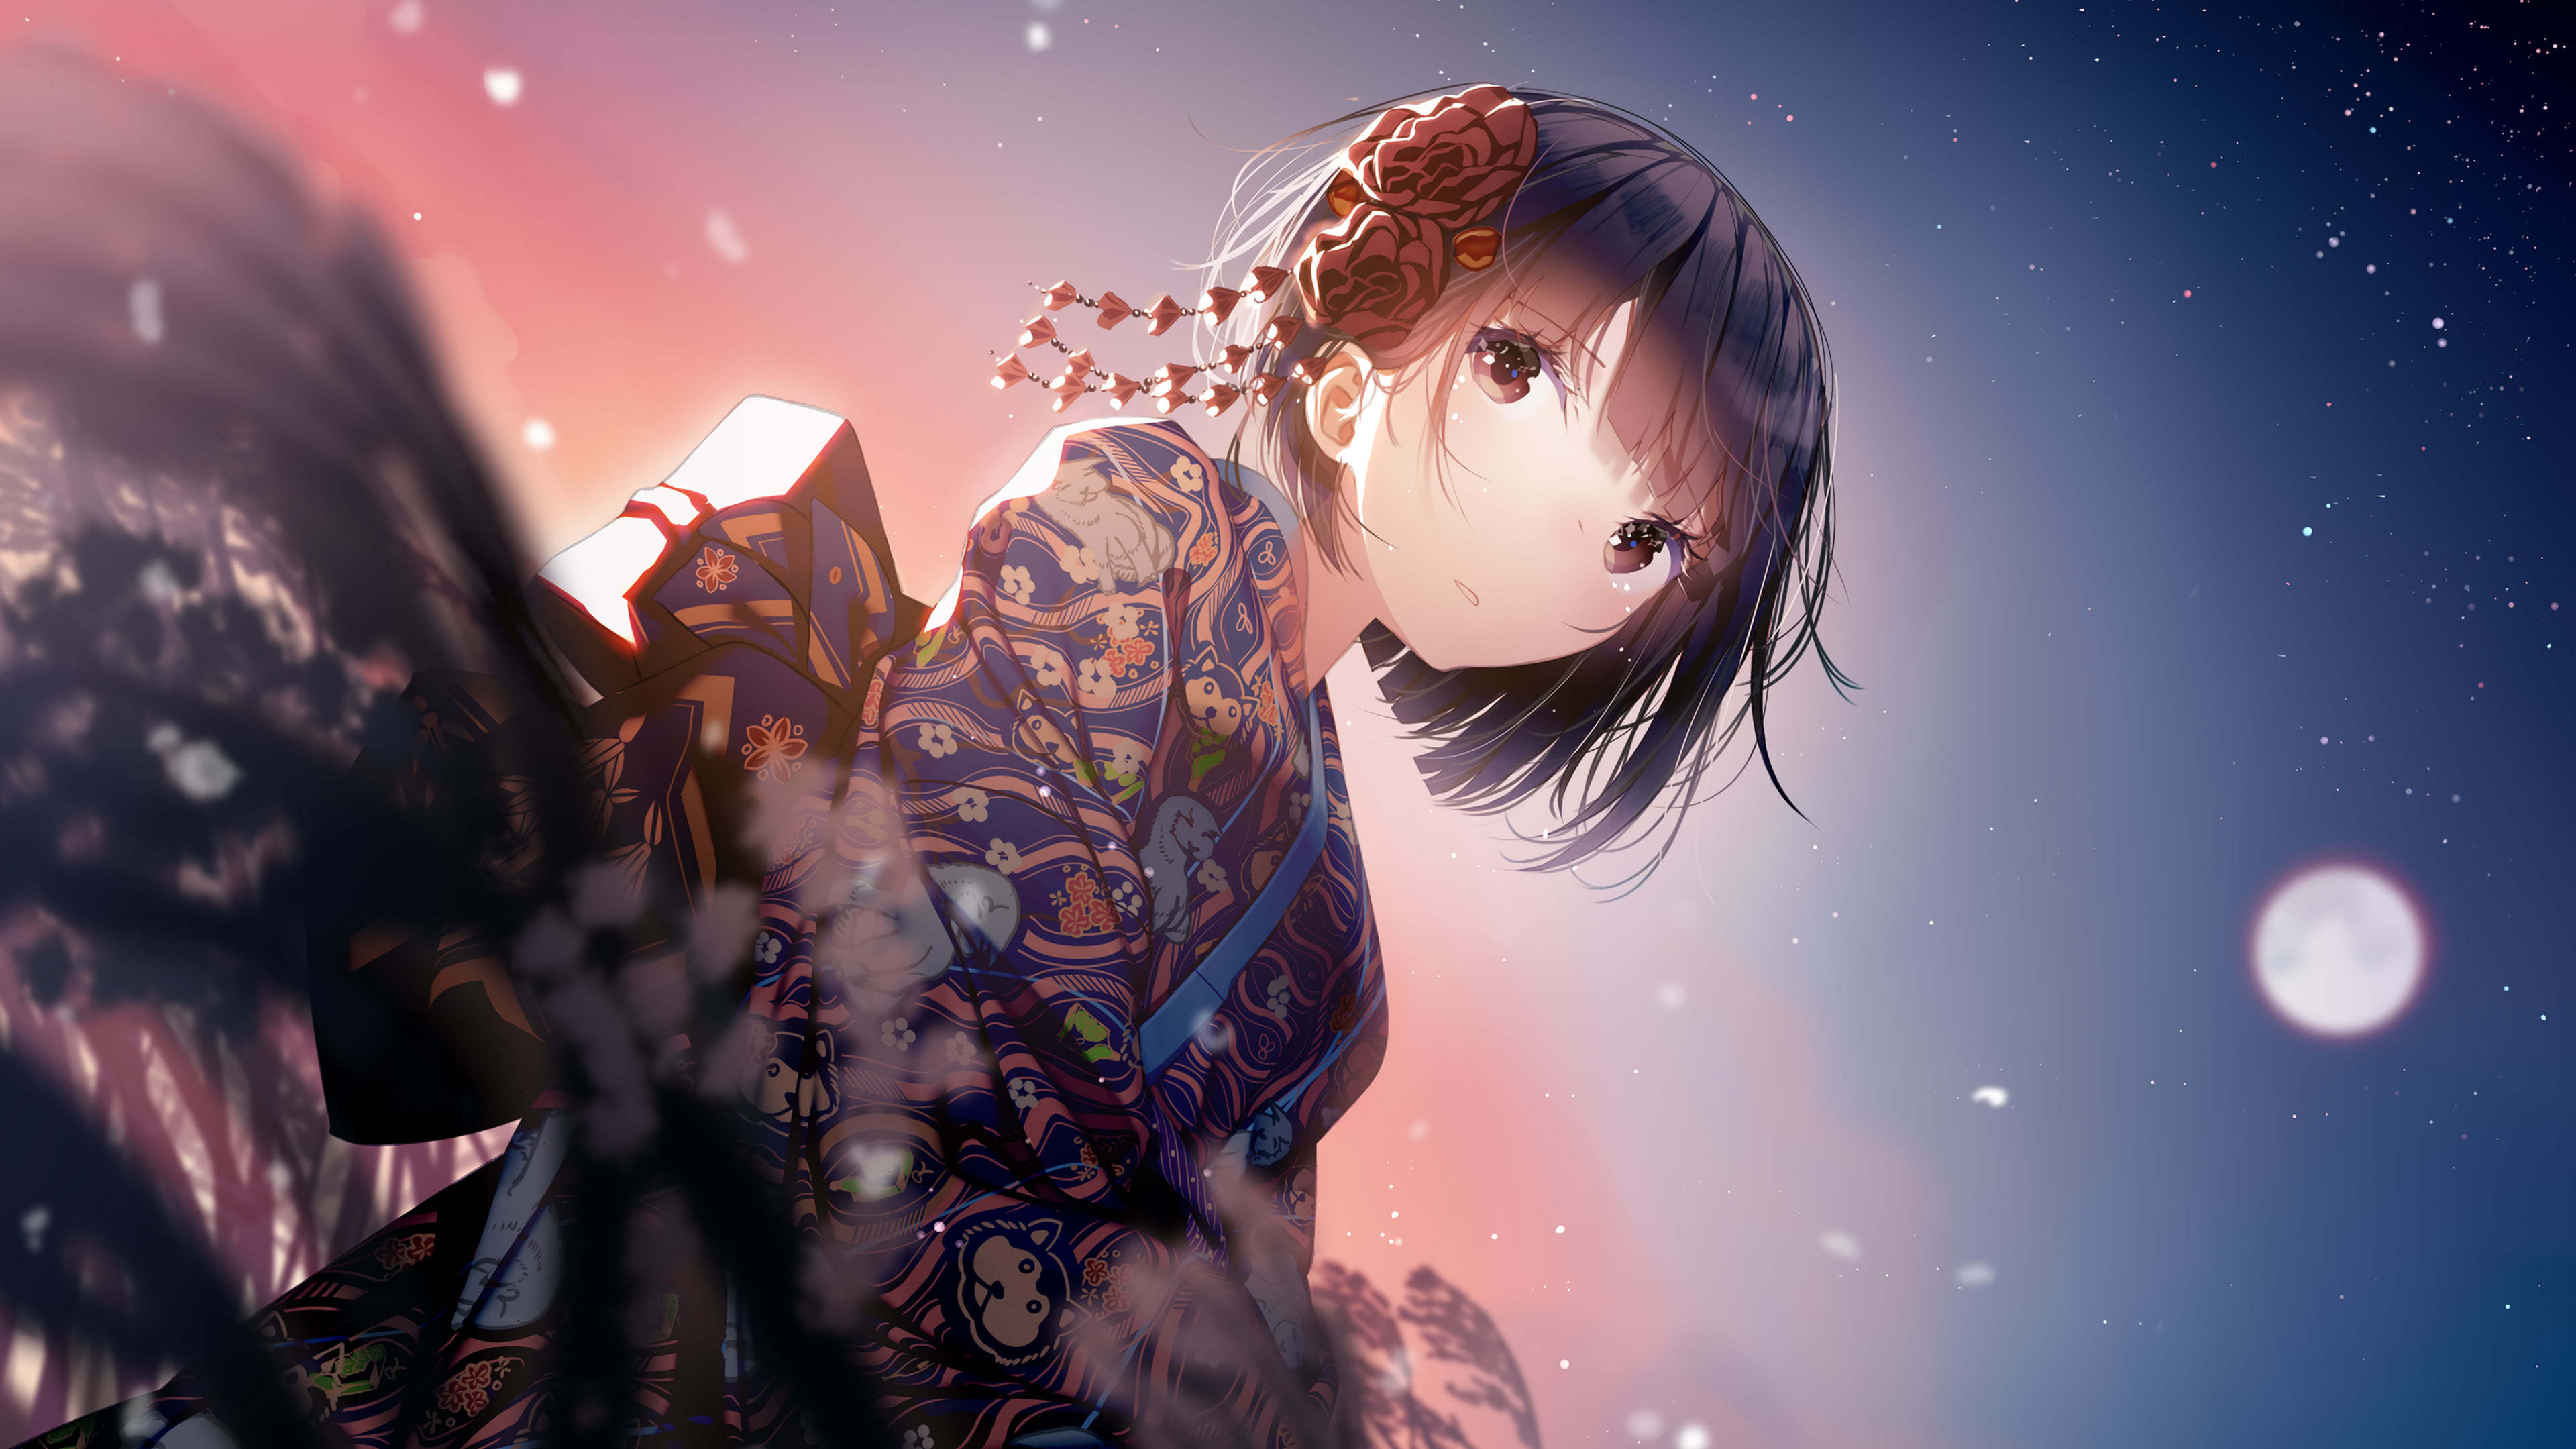 4K Anime Girl Wallpaper Free 4K Anime Girl Background